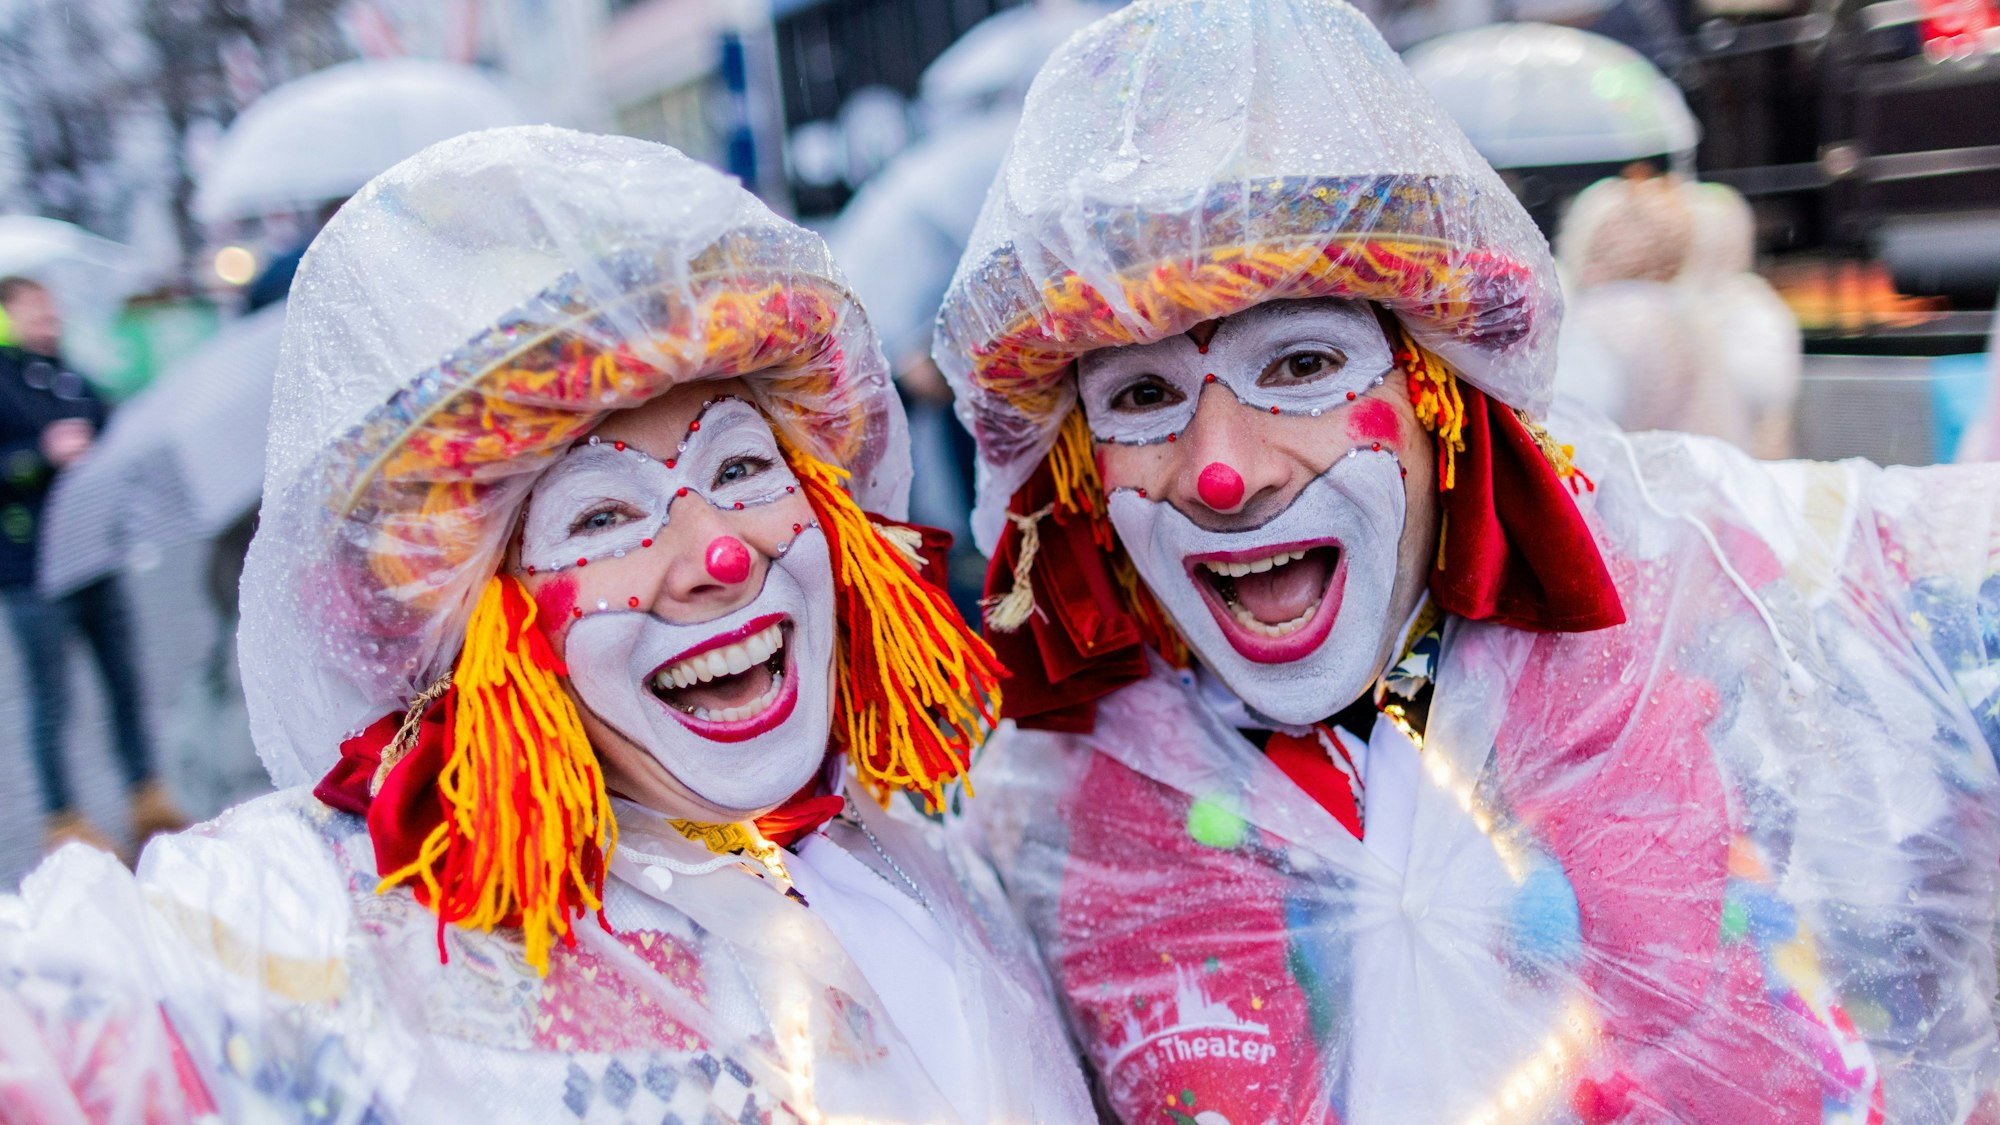 Karnevalisten mit Regenschutz feiern an Weiberfastnacht die Eröffnung des Straßenkarnevals auf dem Alter Markt.